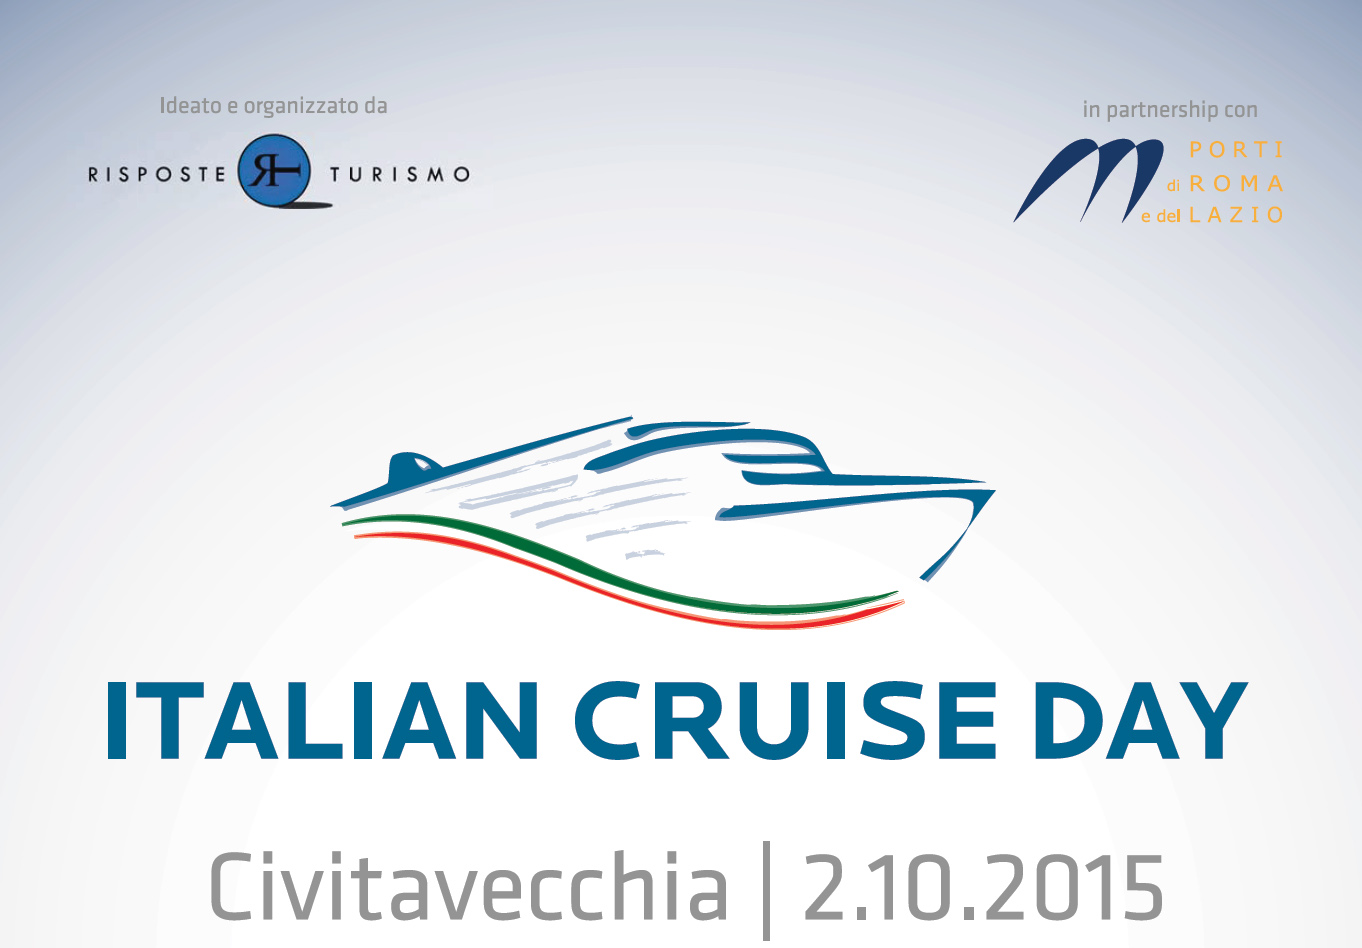 L'Italian Cruise Day è il forum dell'industria crocieristica italiana. Quest'anno si svolgerà a Civitavecchia